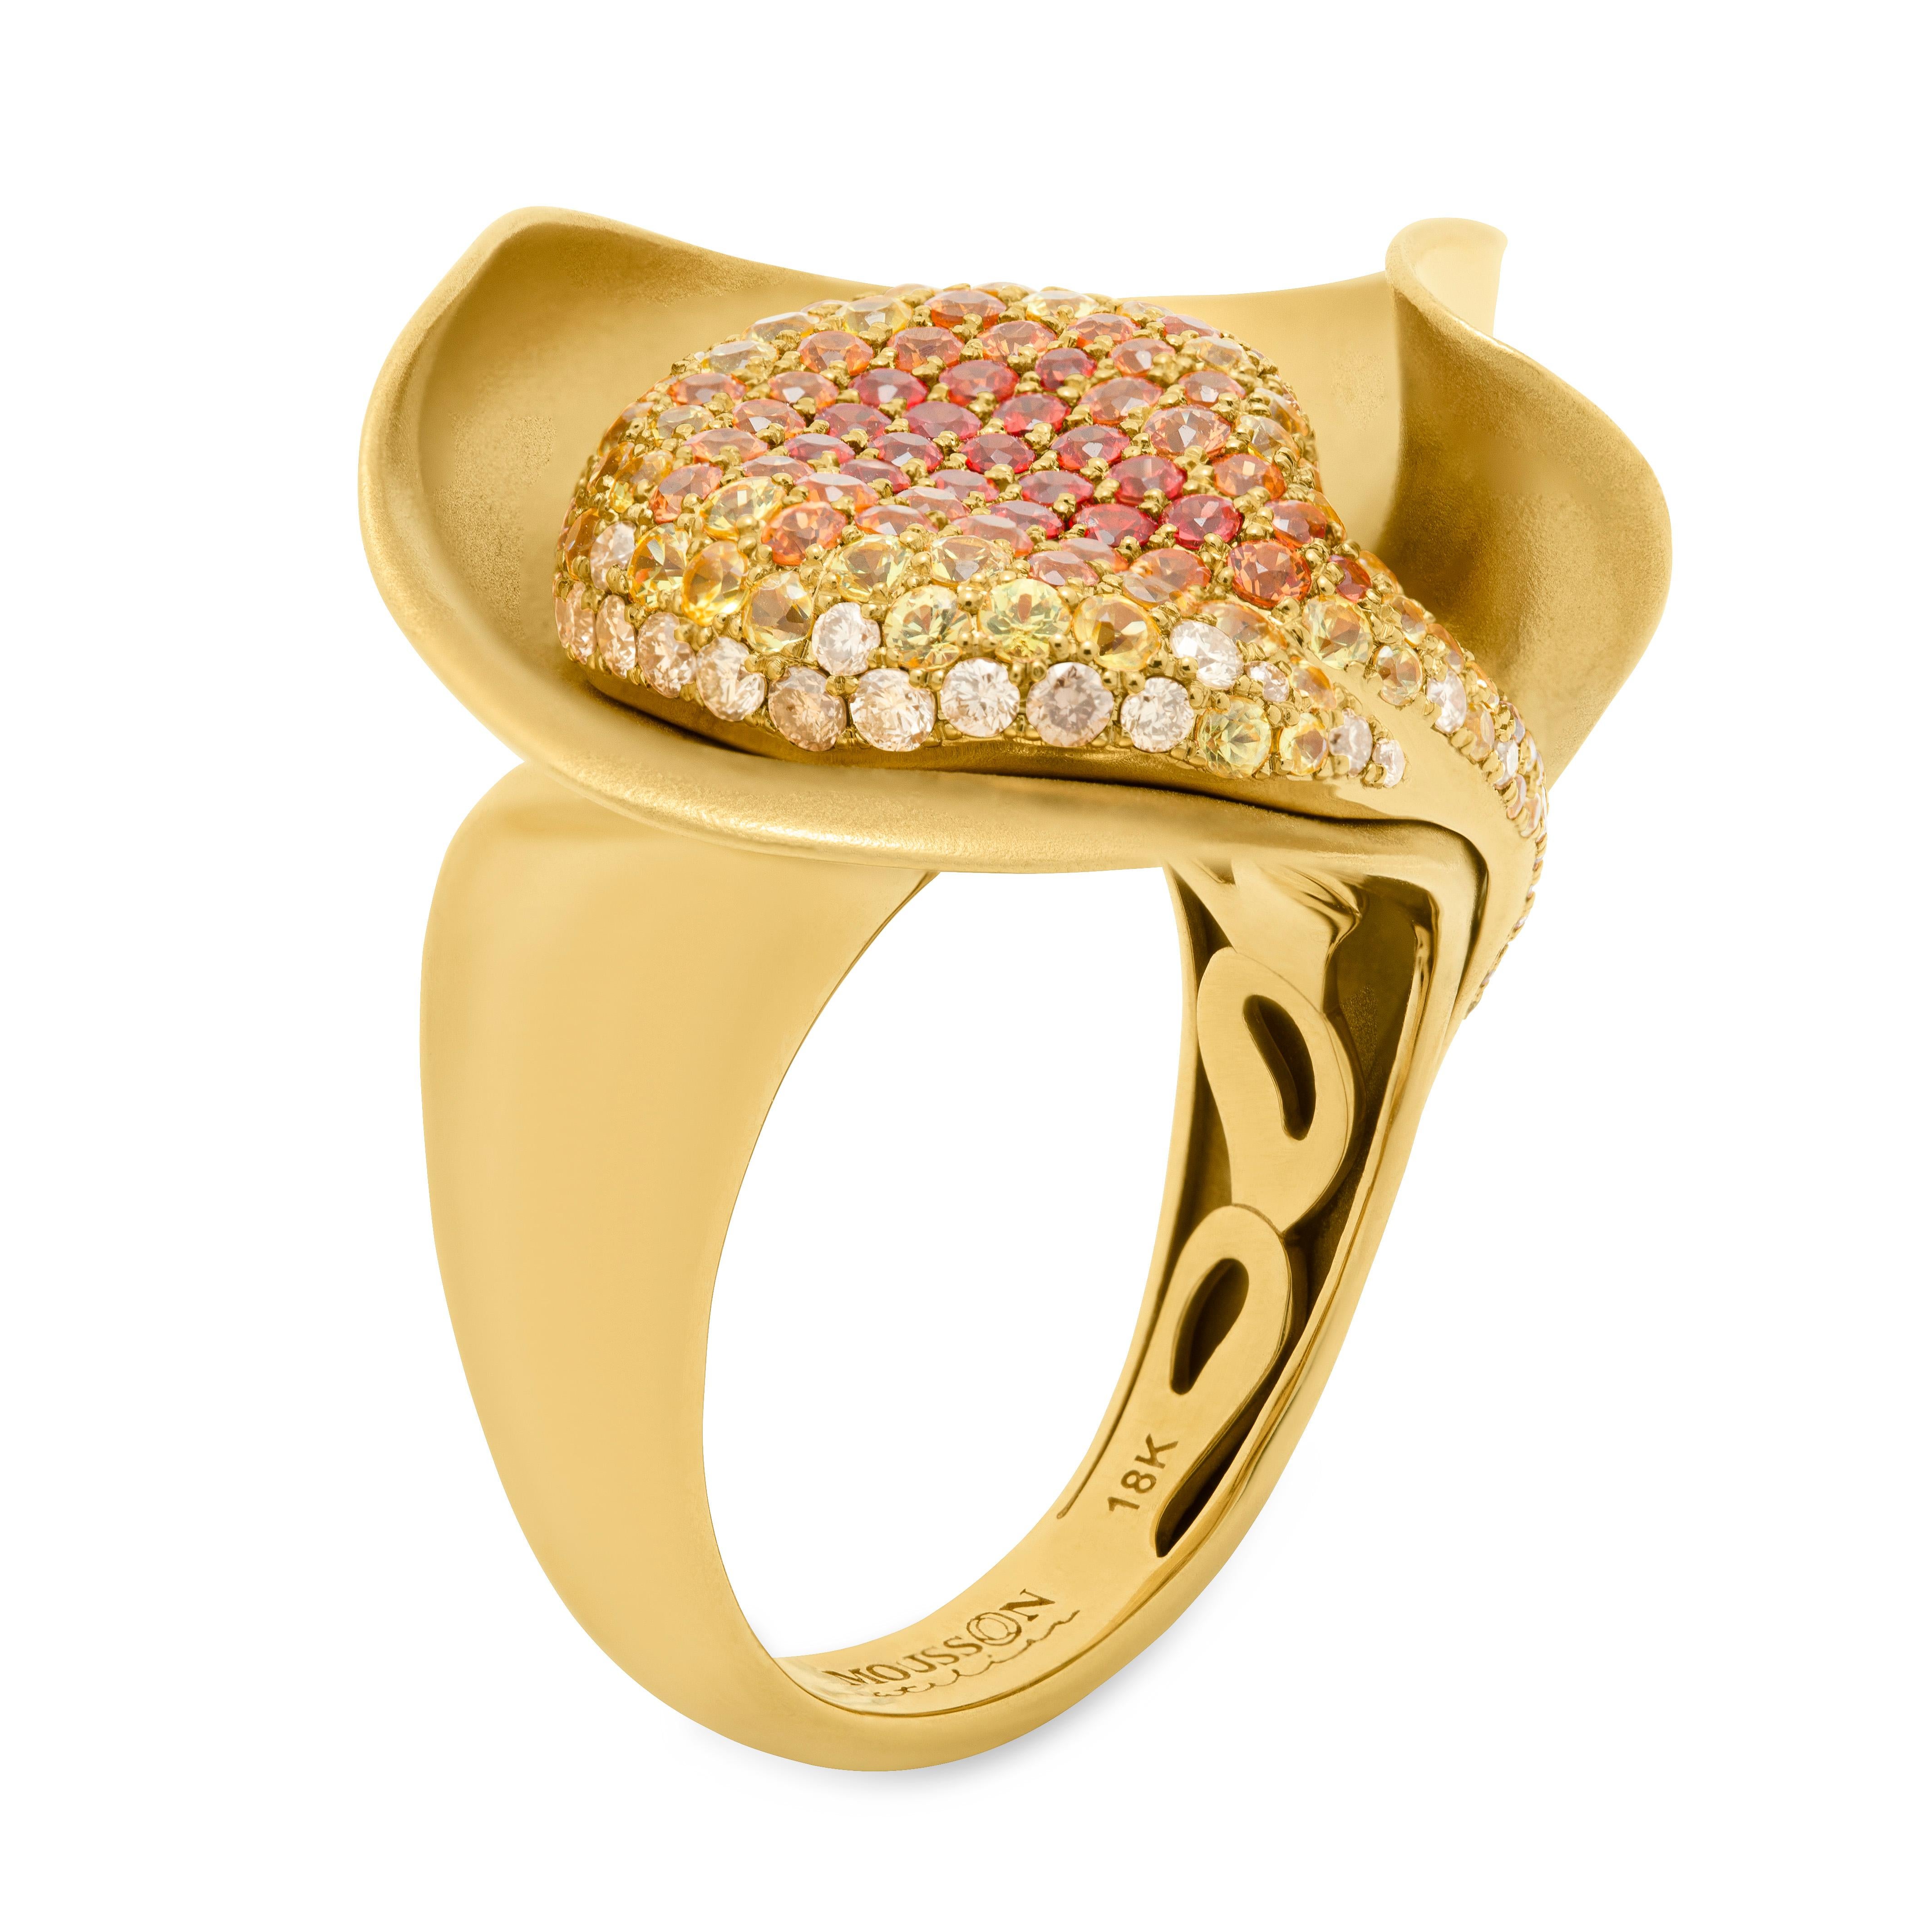 Diamanten Multi-Color Saphire 18 Karat Gelbgold Ring
Haben Sie jemals gesehen, wie das Sonnenlicht auf Seide wirkt? Unsere Designer haben diesen Moment in diesem wunderschönen Ring festgehalten. Die Abstufung von 45 orangefarbenen, 58 gelben